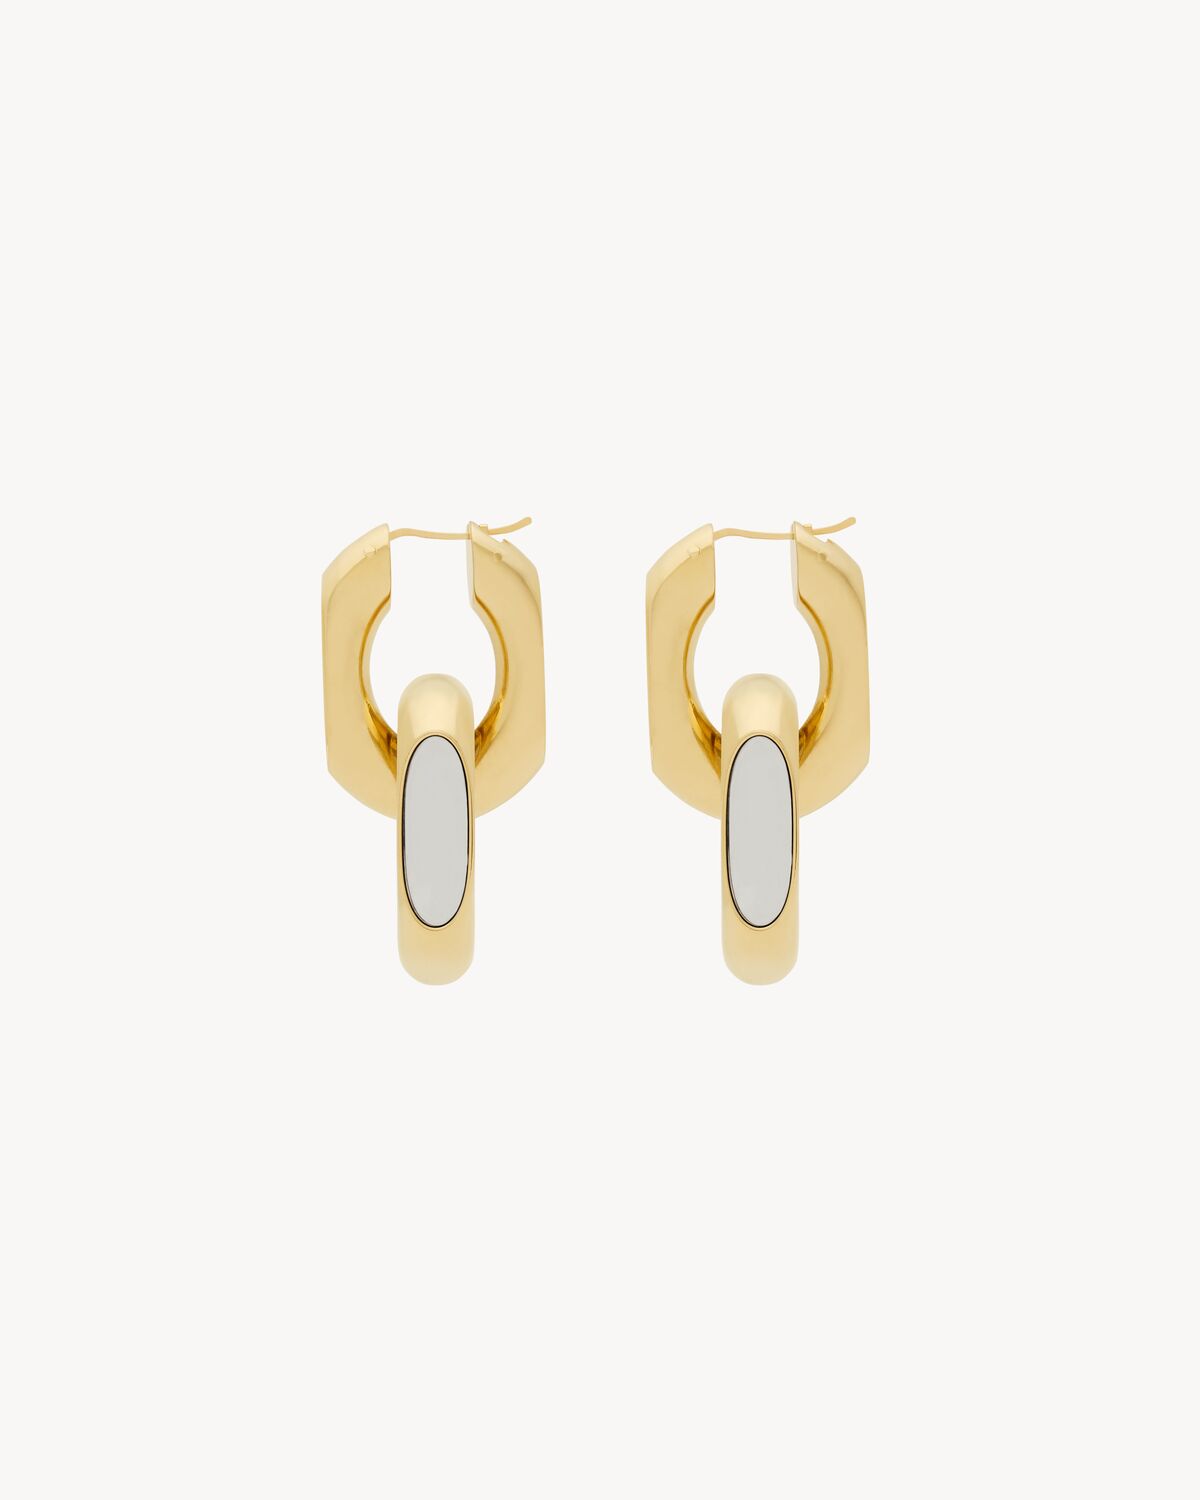 CASSANDRE duo link earrings in metal